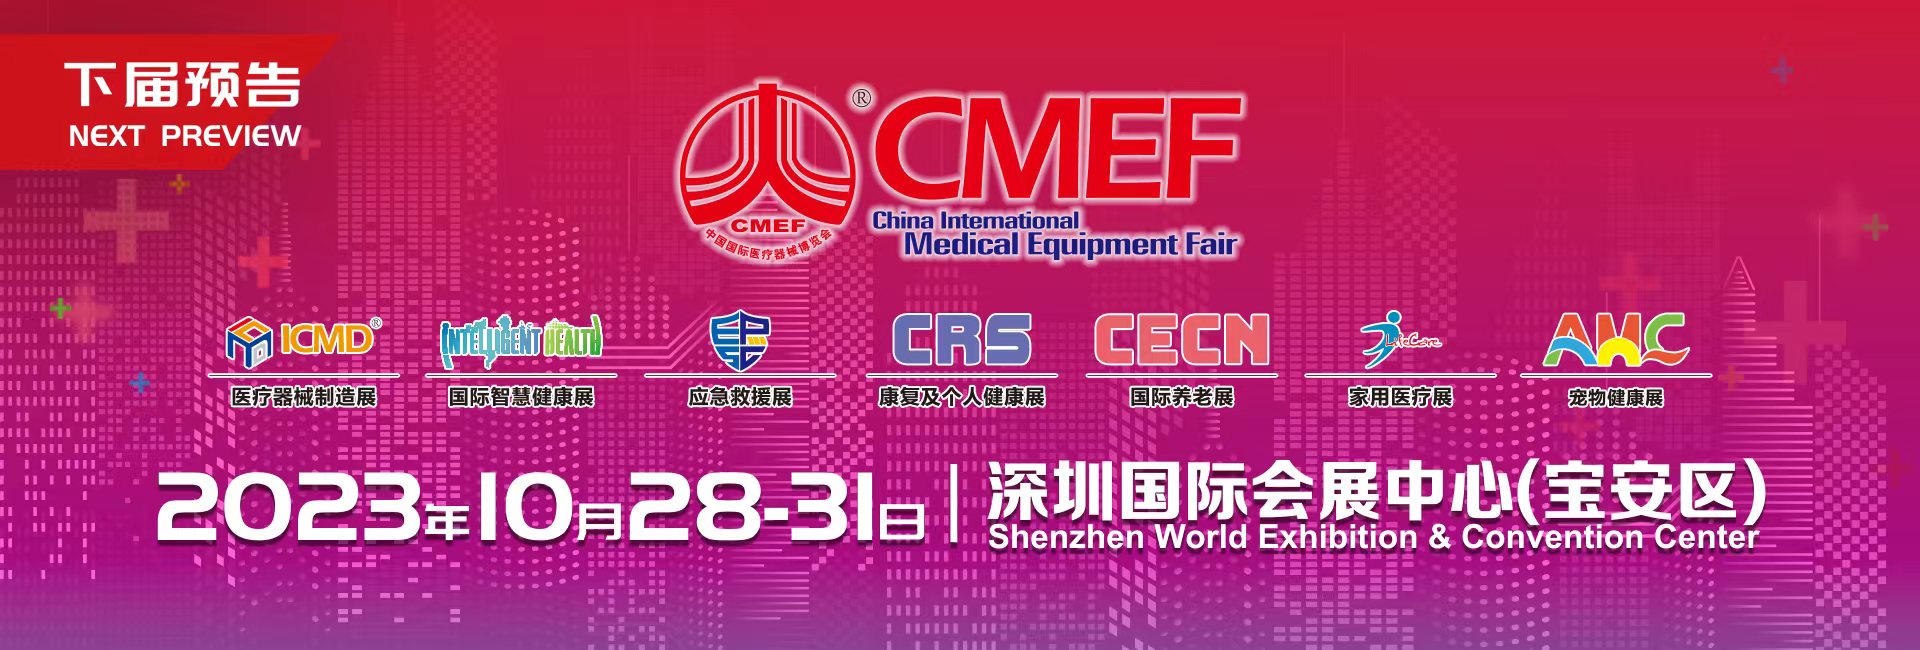 深圳嘉光科技诚邀莅临2023第88届CMEF中国国际医疗器械博览会.jpg